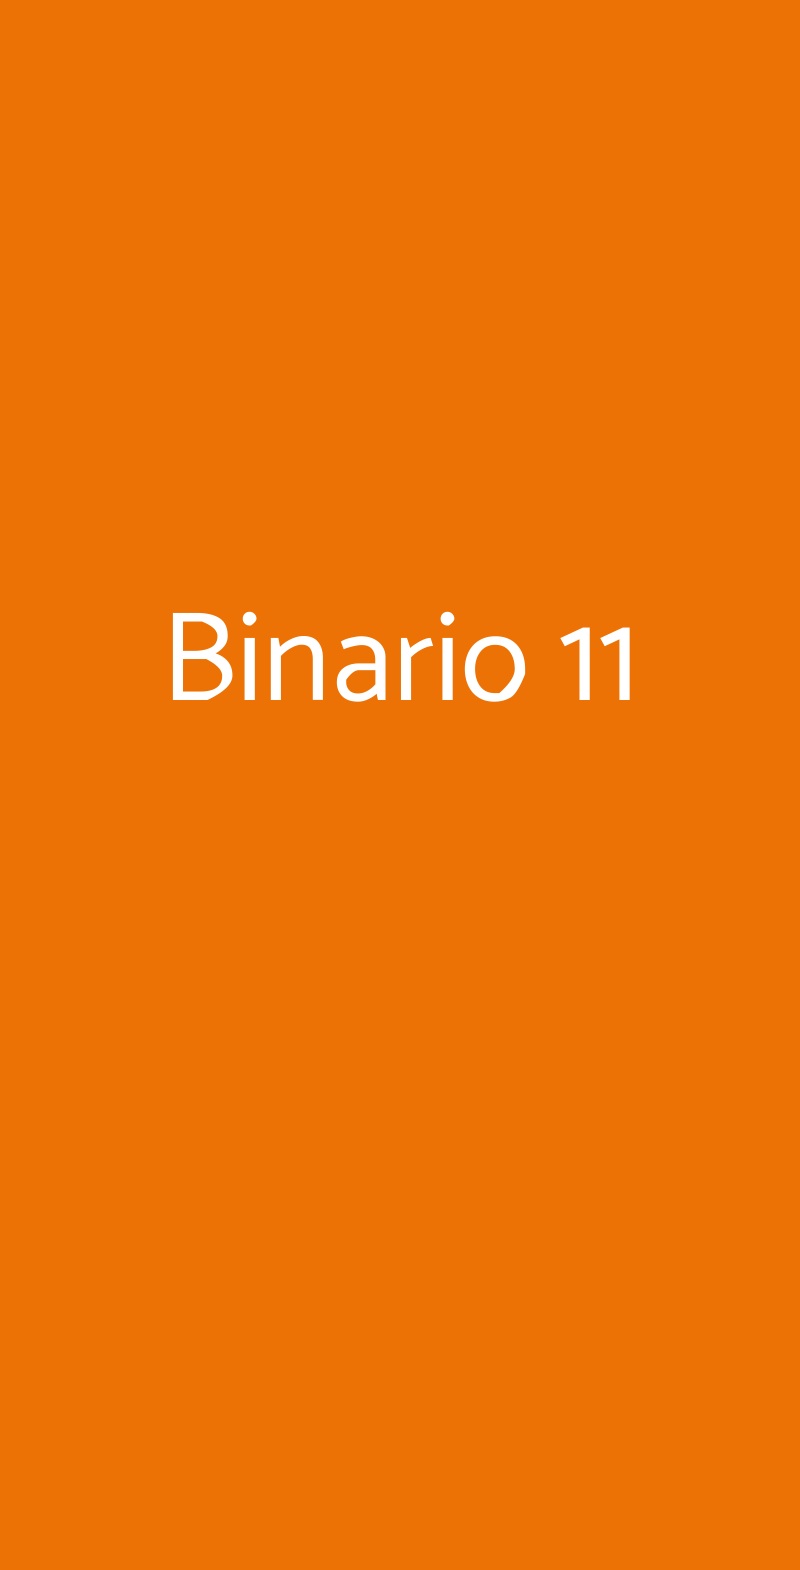 Binario 11 Milano menù 1 pagina